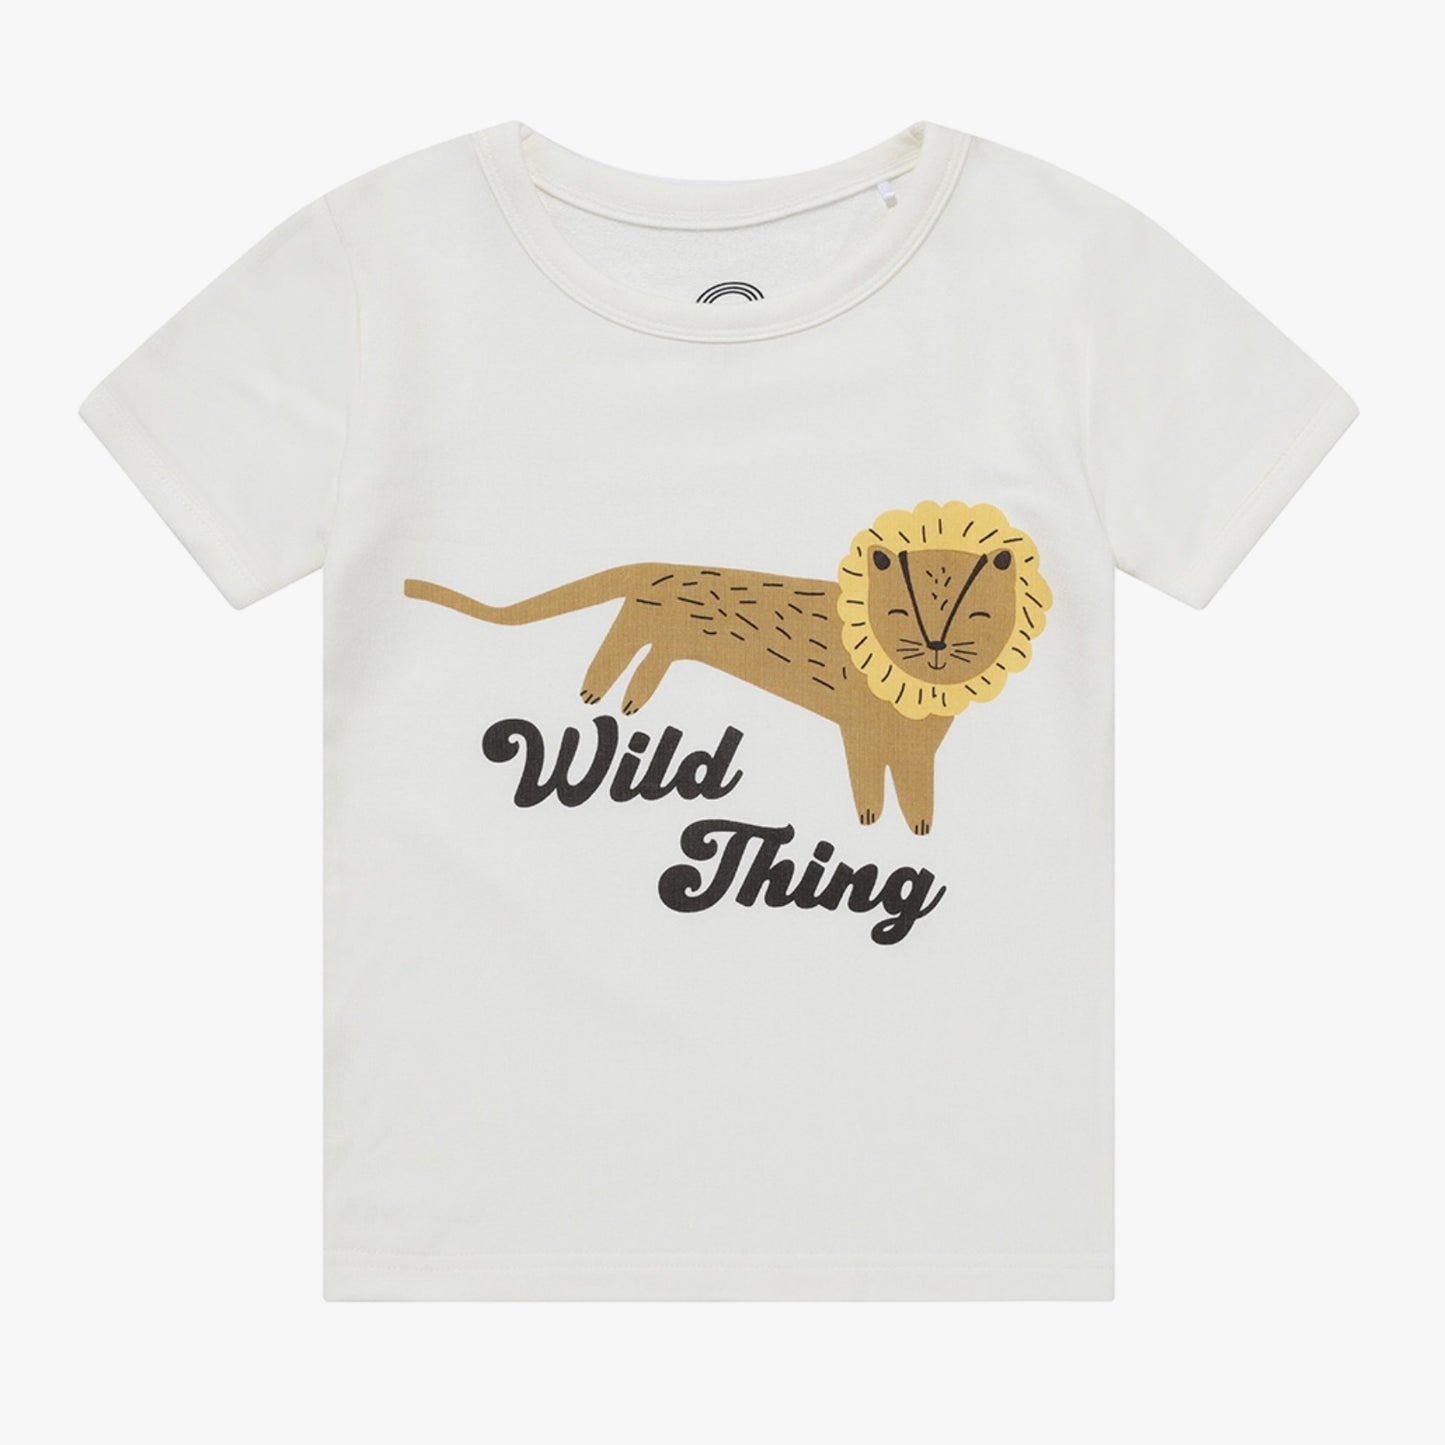 wild thing tee